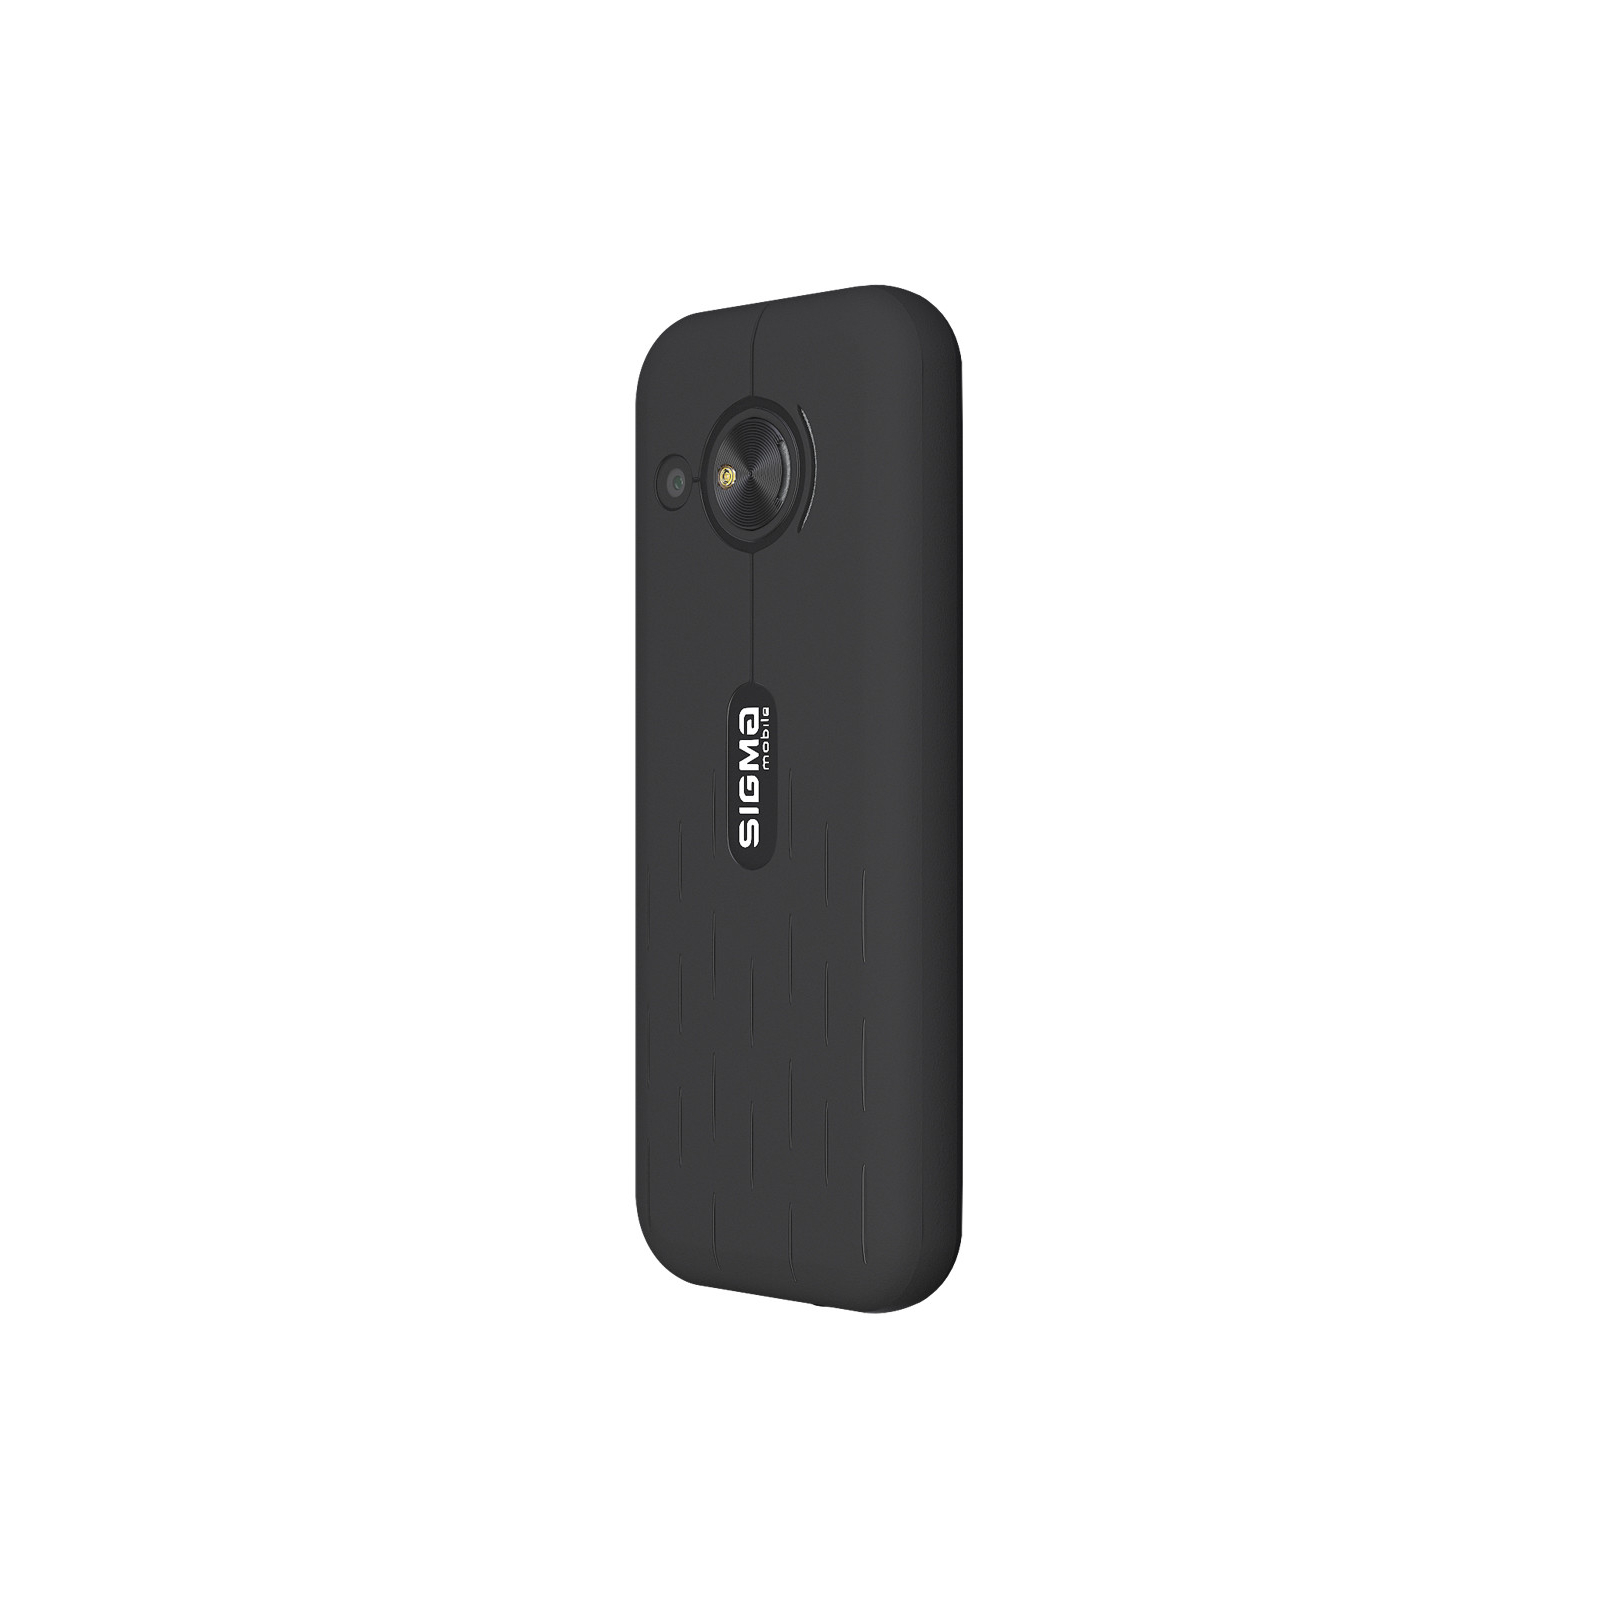 Мобильный телефон Sigma X-style S3500 sKai Black (4827798121610) изображение 4